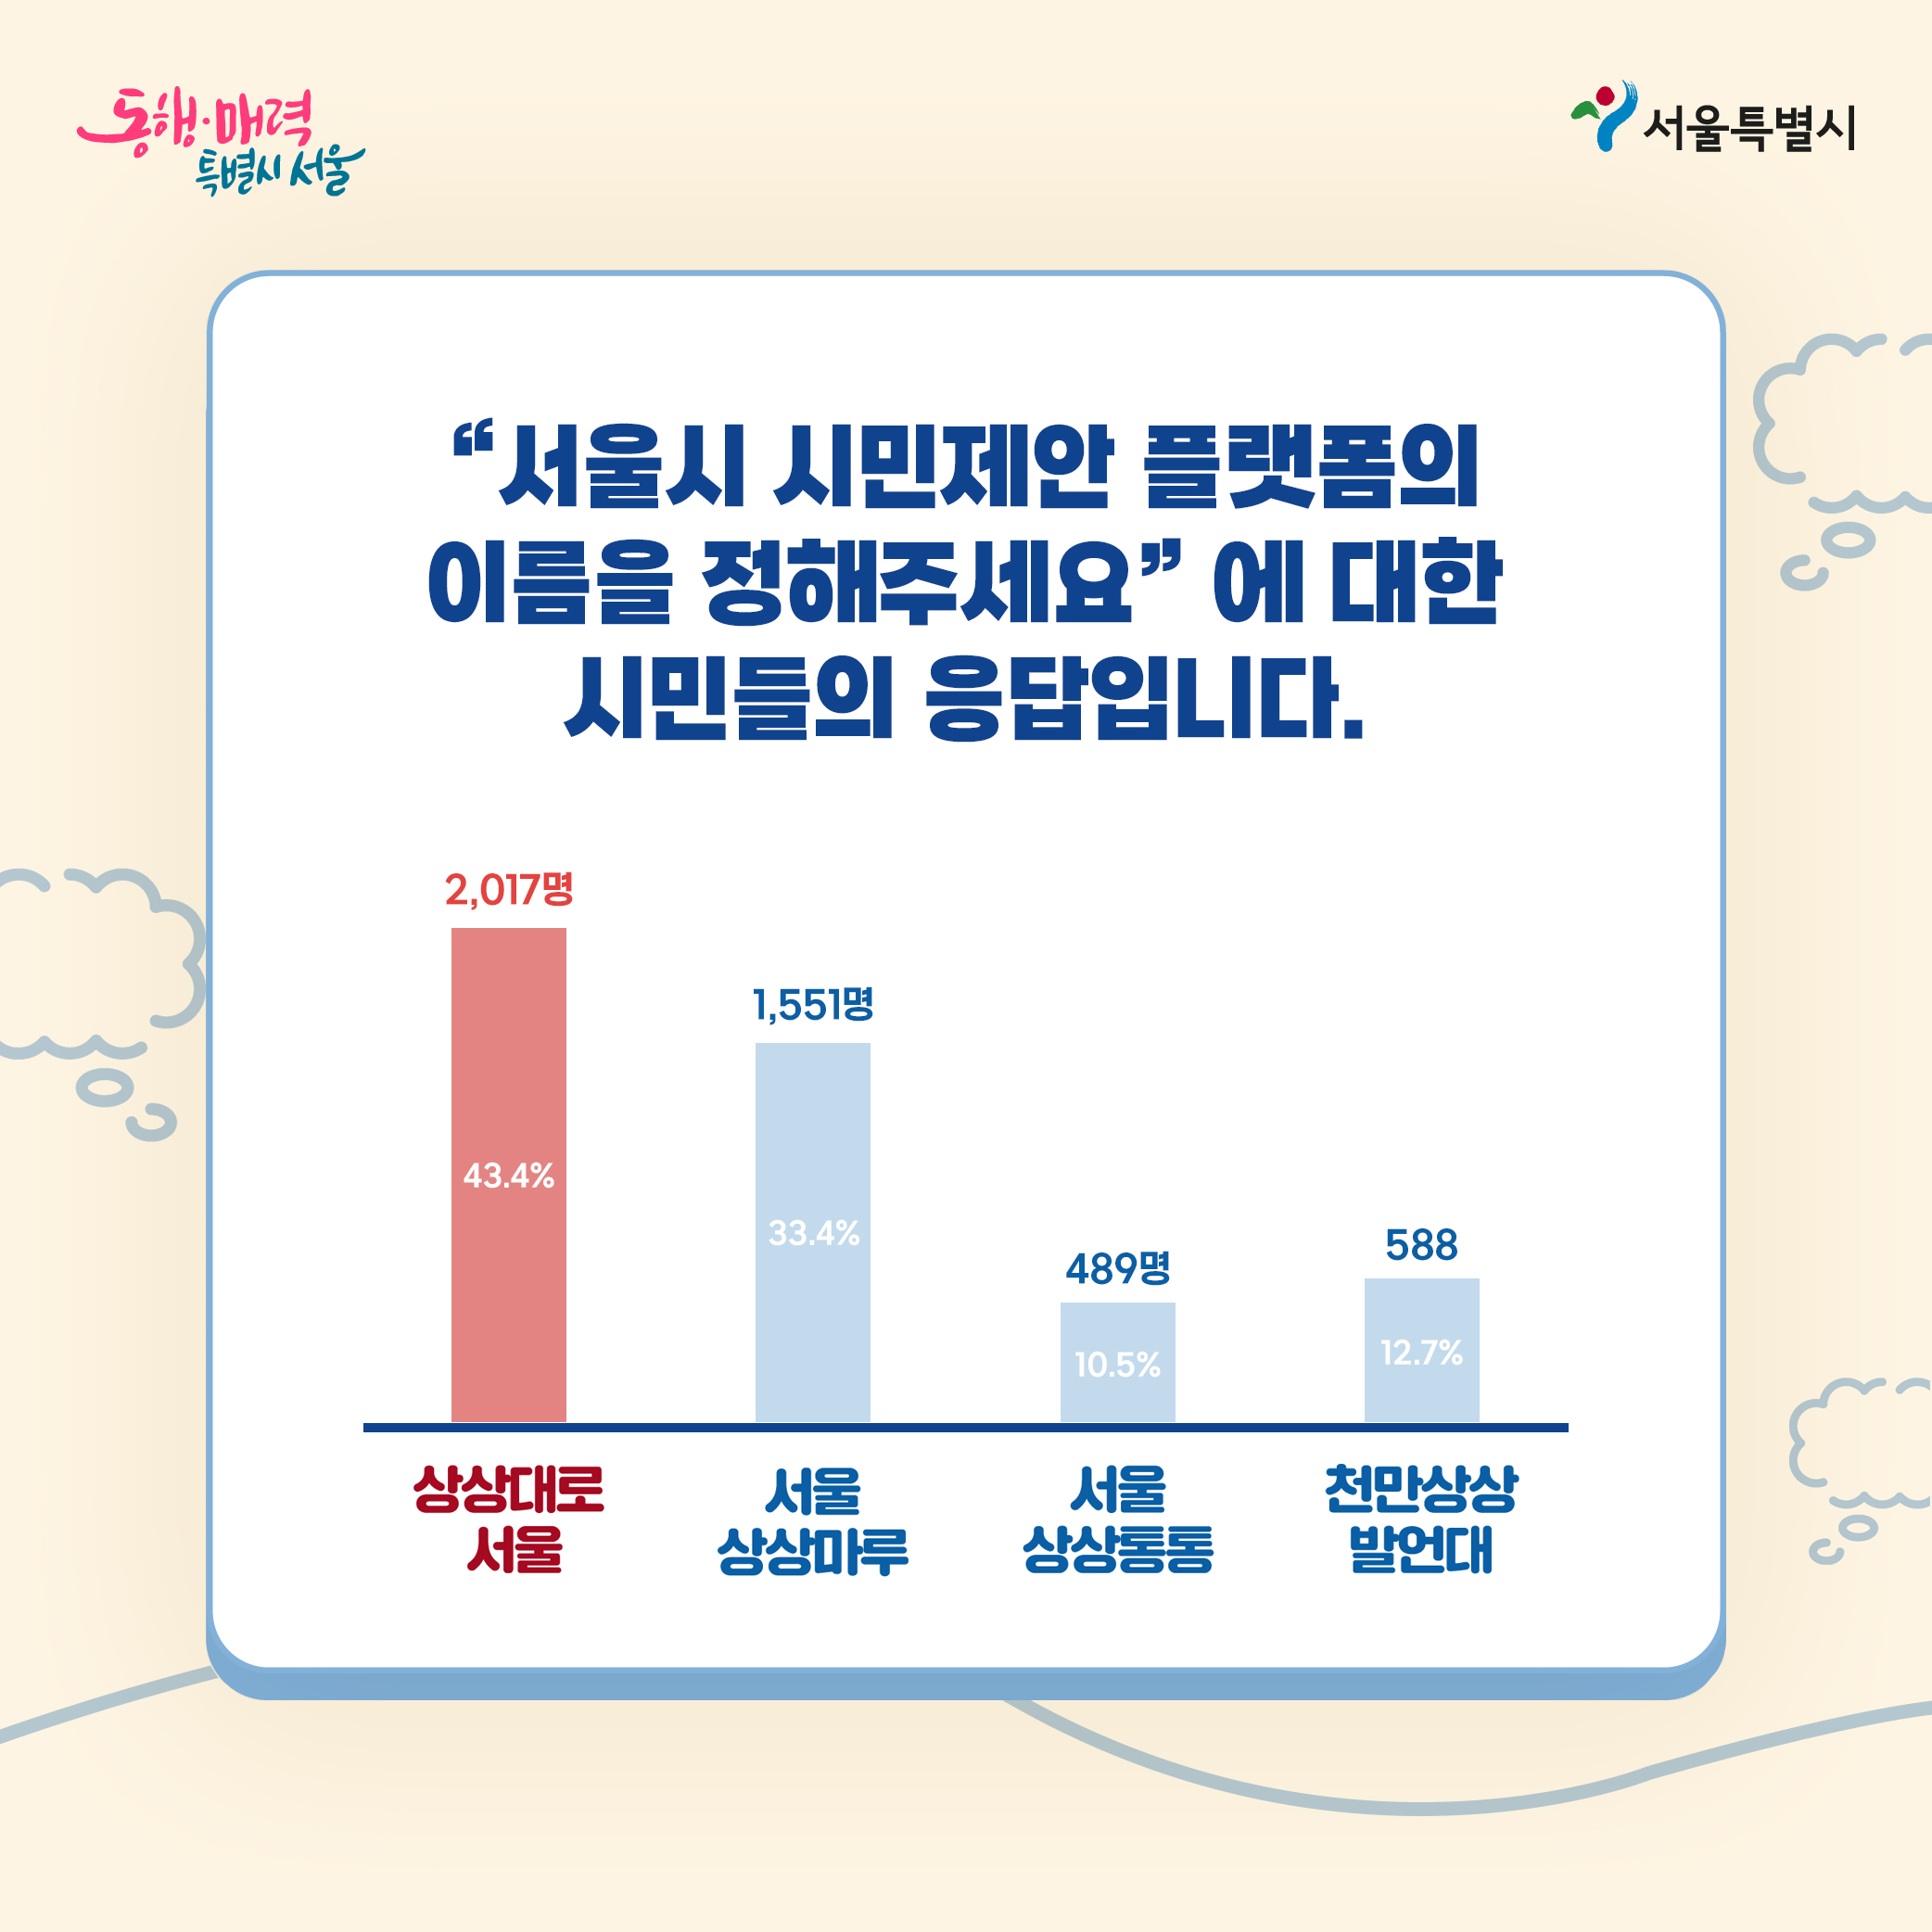 서울시 시민제안플랫폼의 이름을 정해주세요!에 대한 시민들의 응답입니다. ㅇ상상대로서울(2017명,43.4%) ㅇ서울상상마루(1551명,33,.4%) ㅇ서울상상통통(489명,10.5%) ㅇ천만상상발언대(588명,12.7%) 